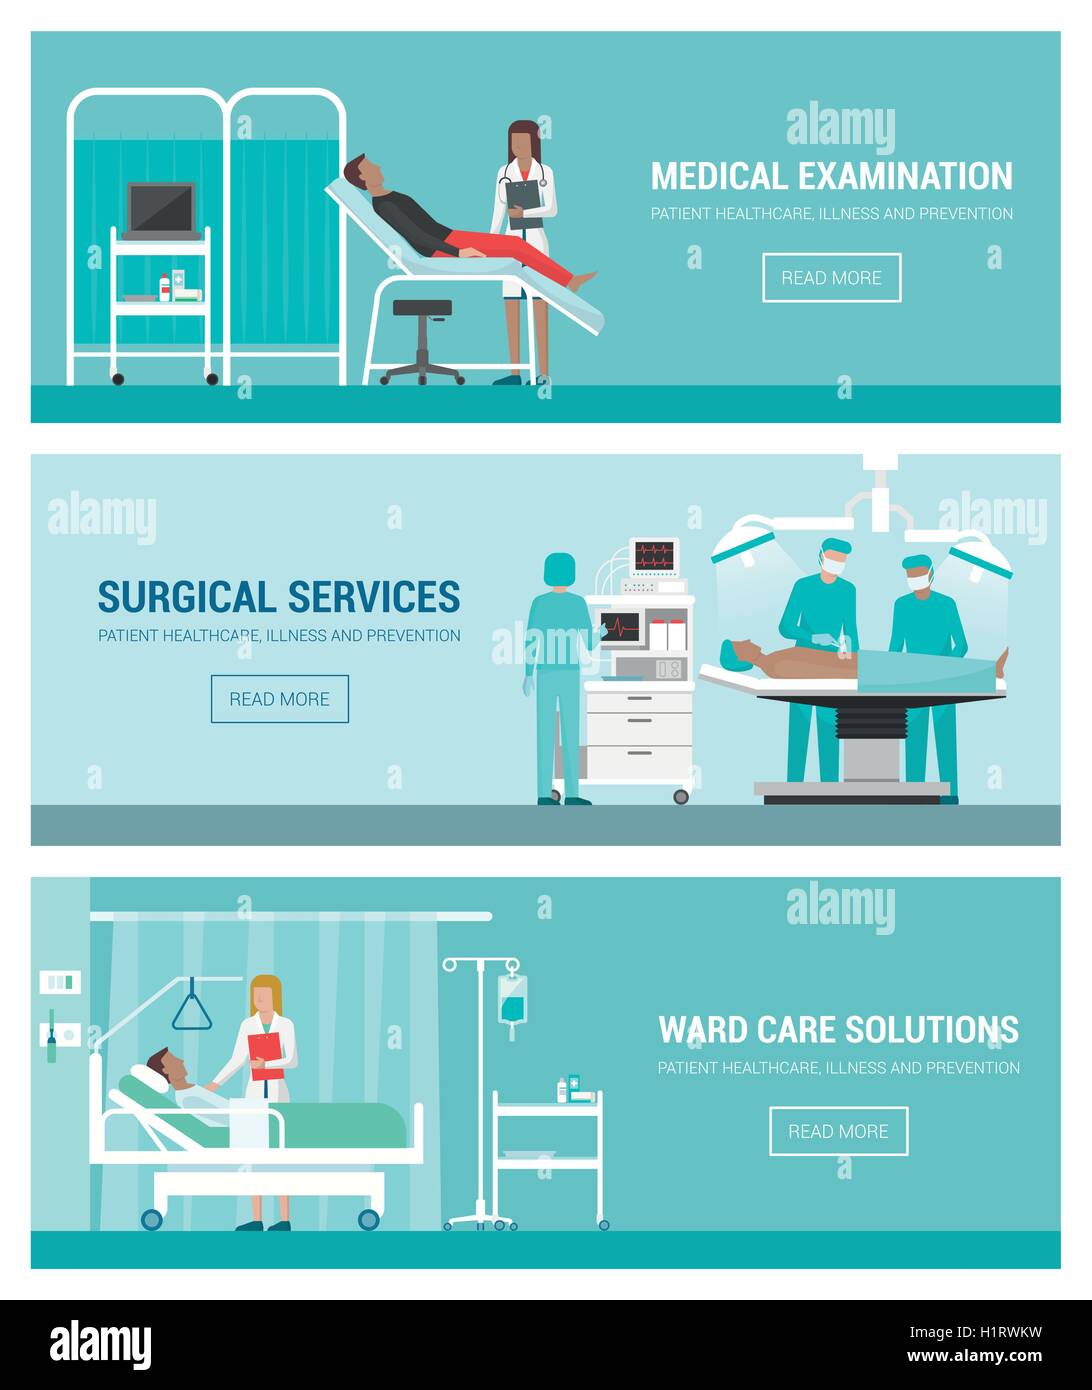 Krankenhaus und Gesundheitswesen Banner gesetzt, ärztliche Untersuchung, Operation, Ward und Ärzte bei der Arbeit mit Patienten Stock Vektor